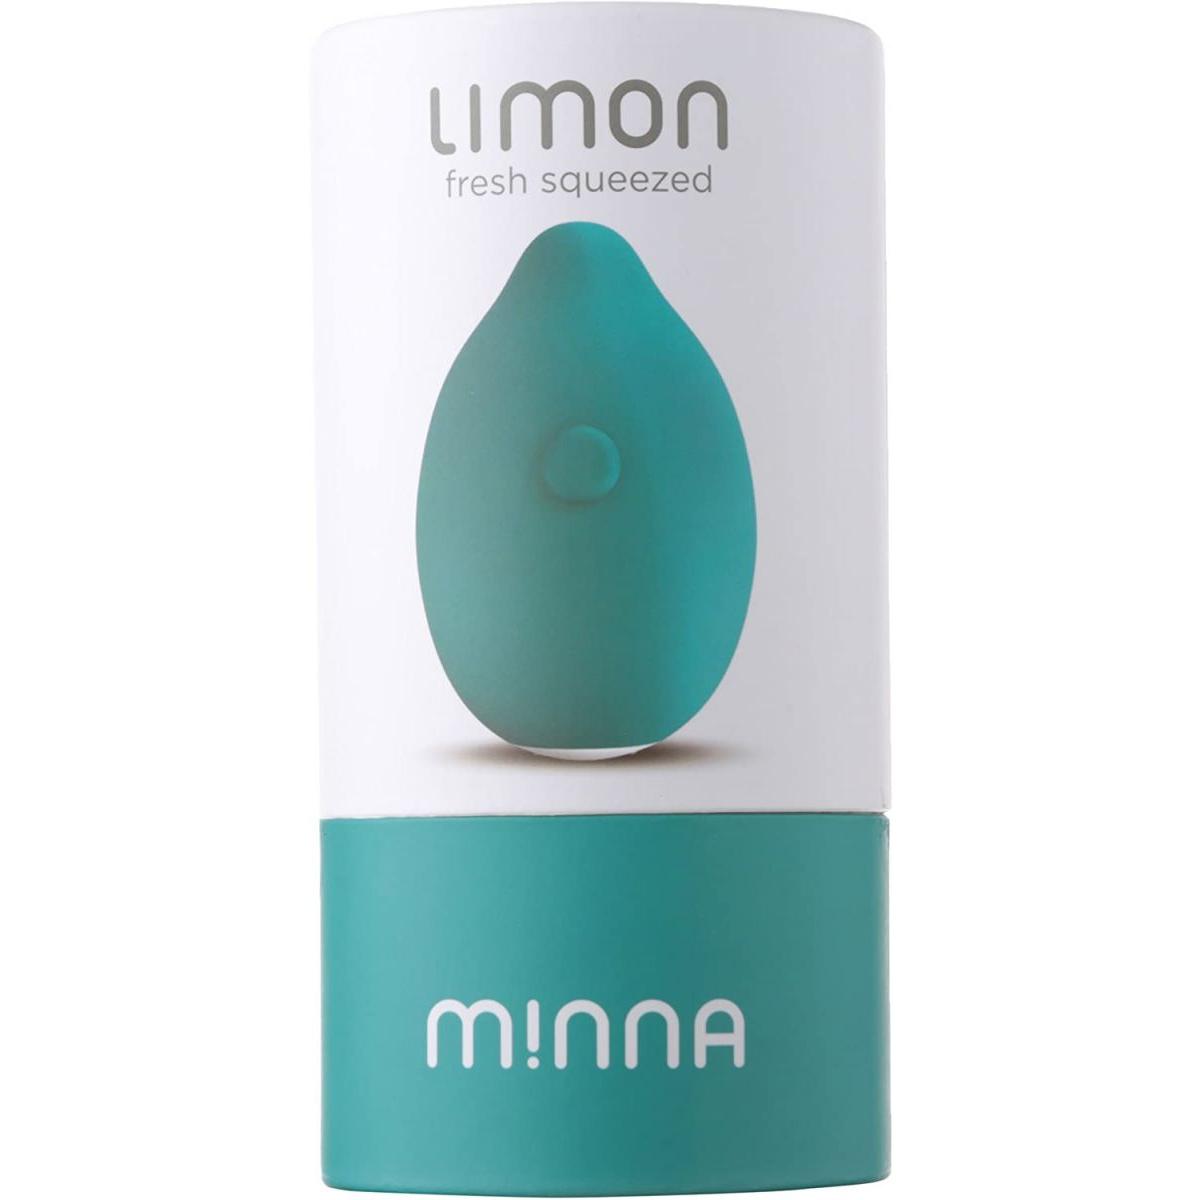 Зеленый вибростимулятор Minna Life Limon